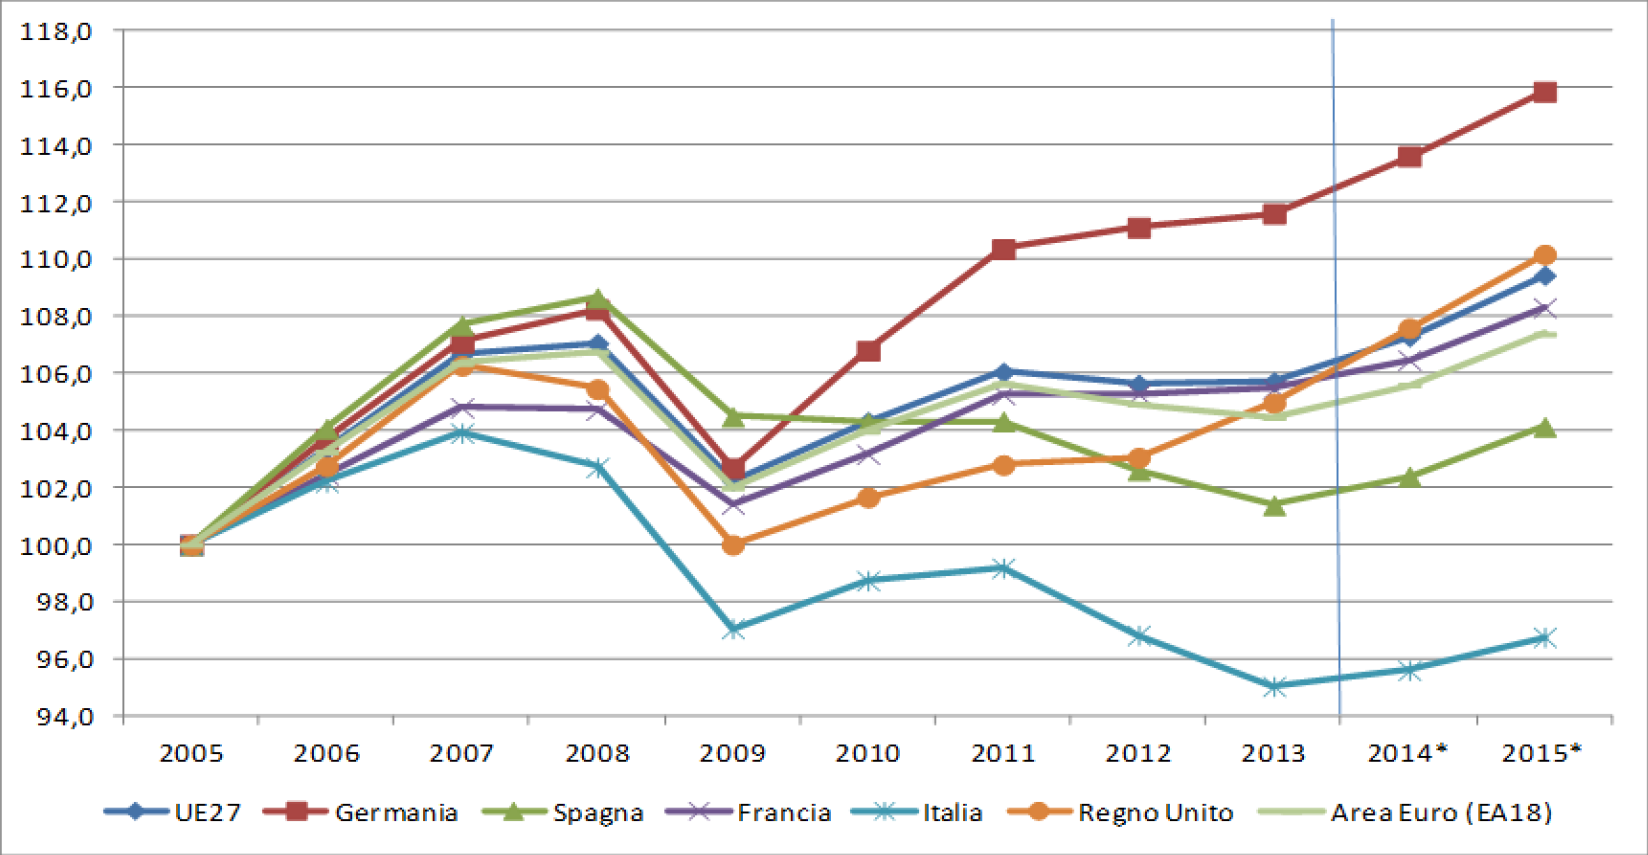 Evoluzione del Pil nei principali Paesi europei, anni 2005-2015